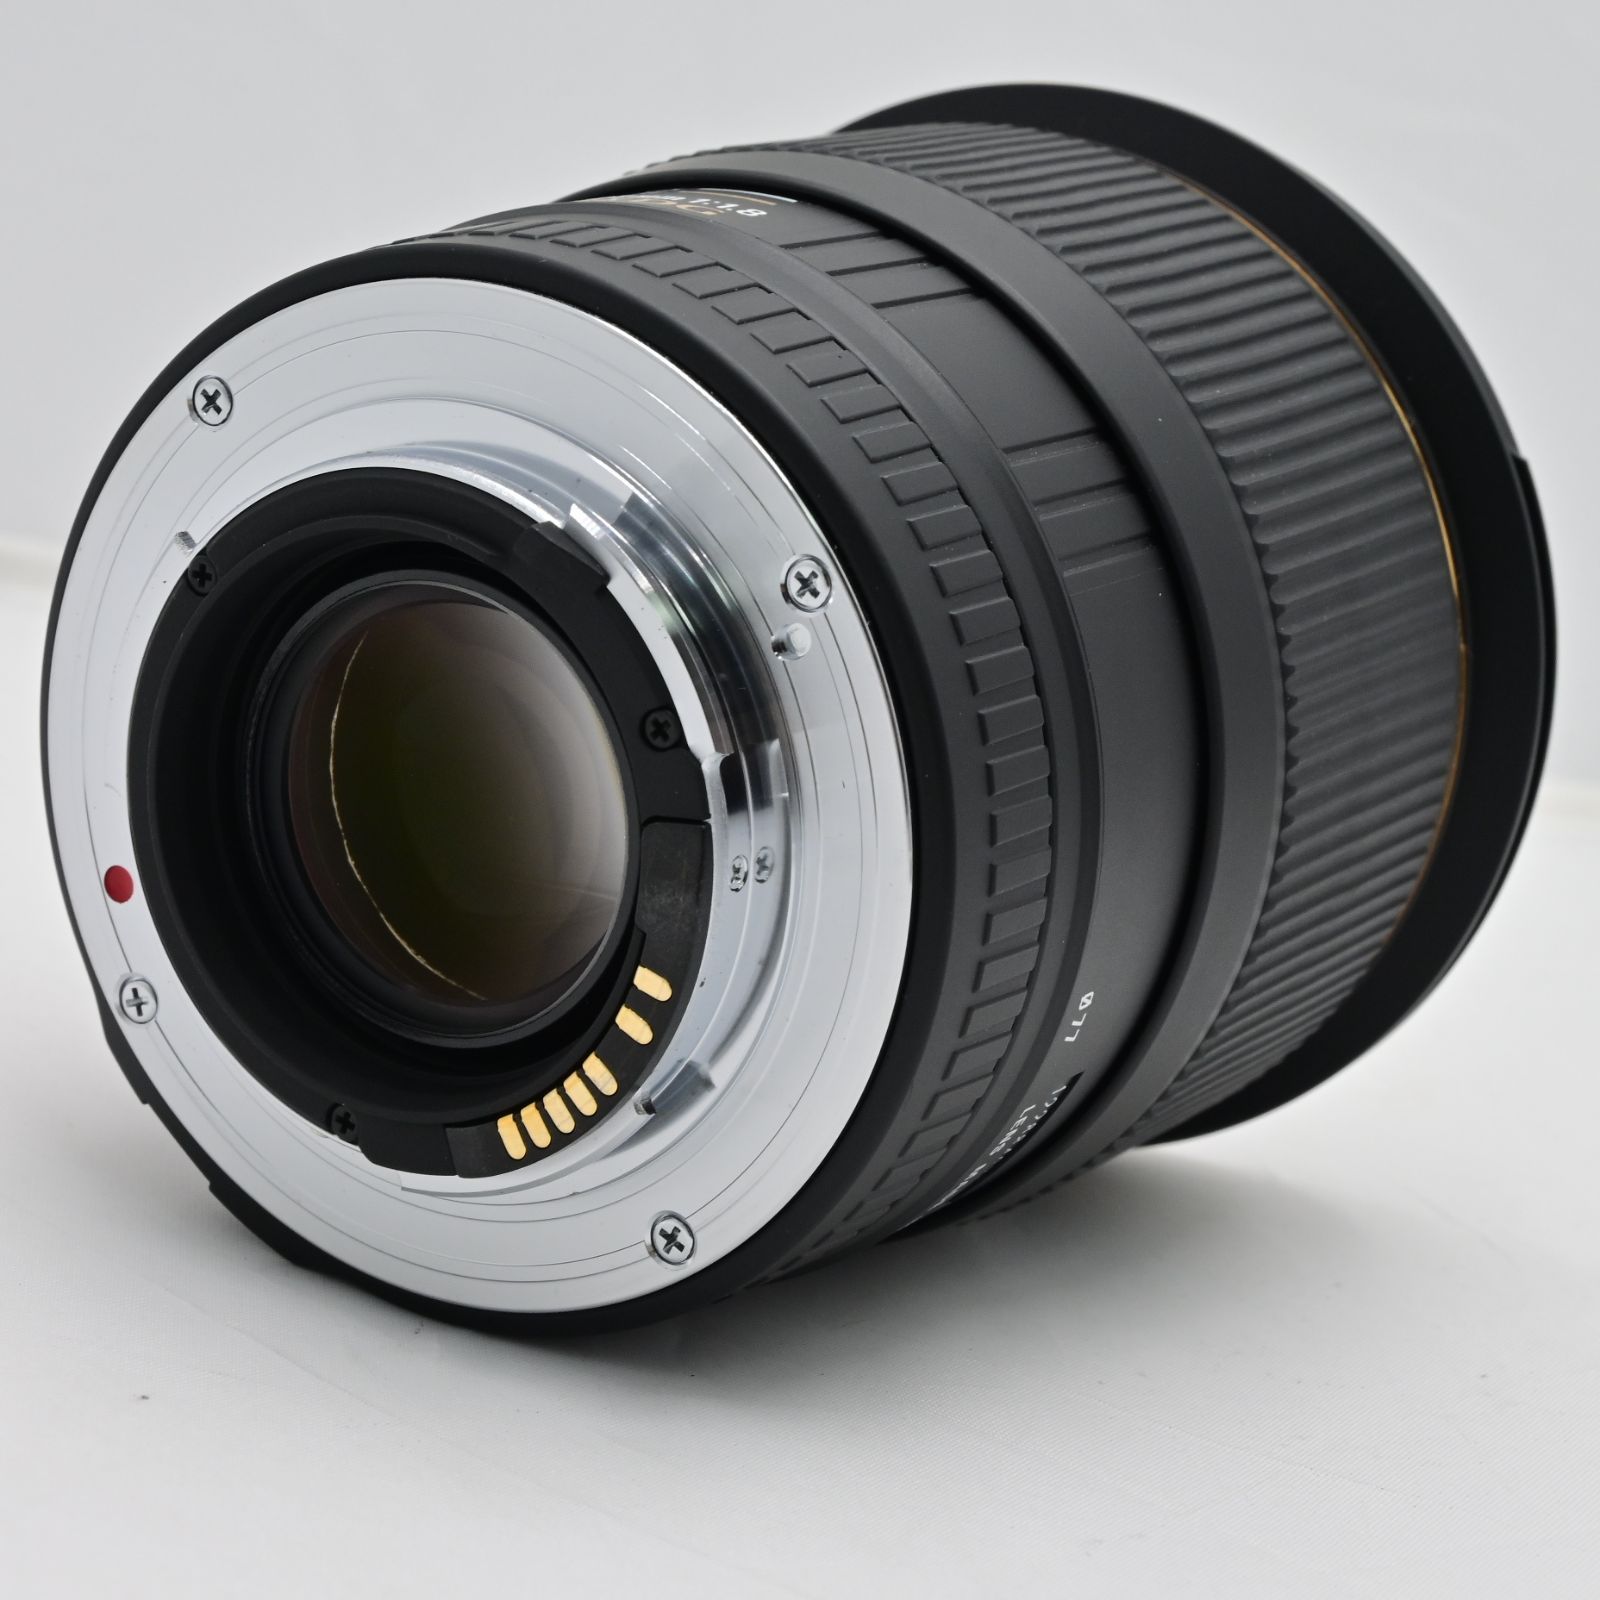 シグマ SIGMA 単焦点広角レンズ 28mm F1.8 EX DG ASPHERICAL MACRO